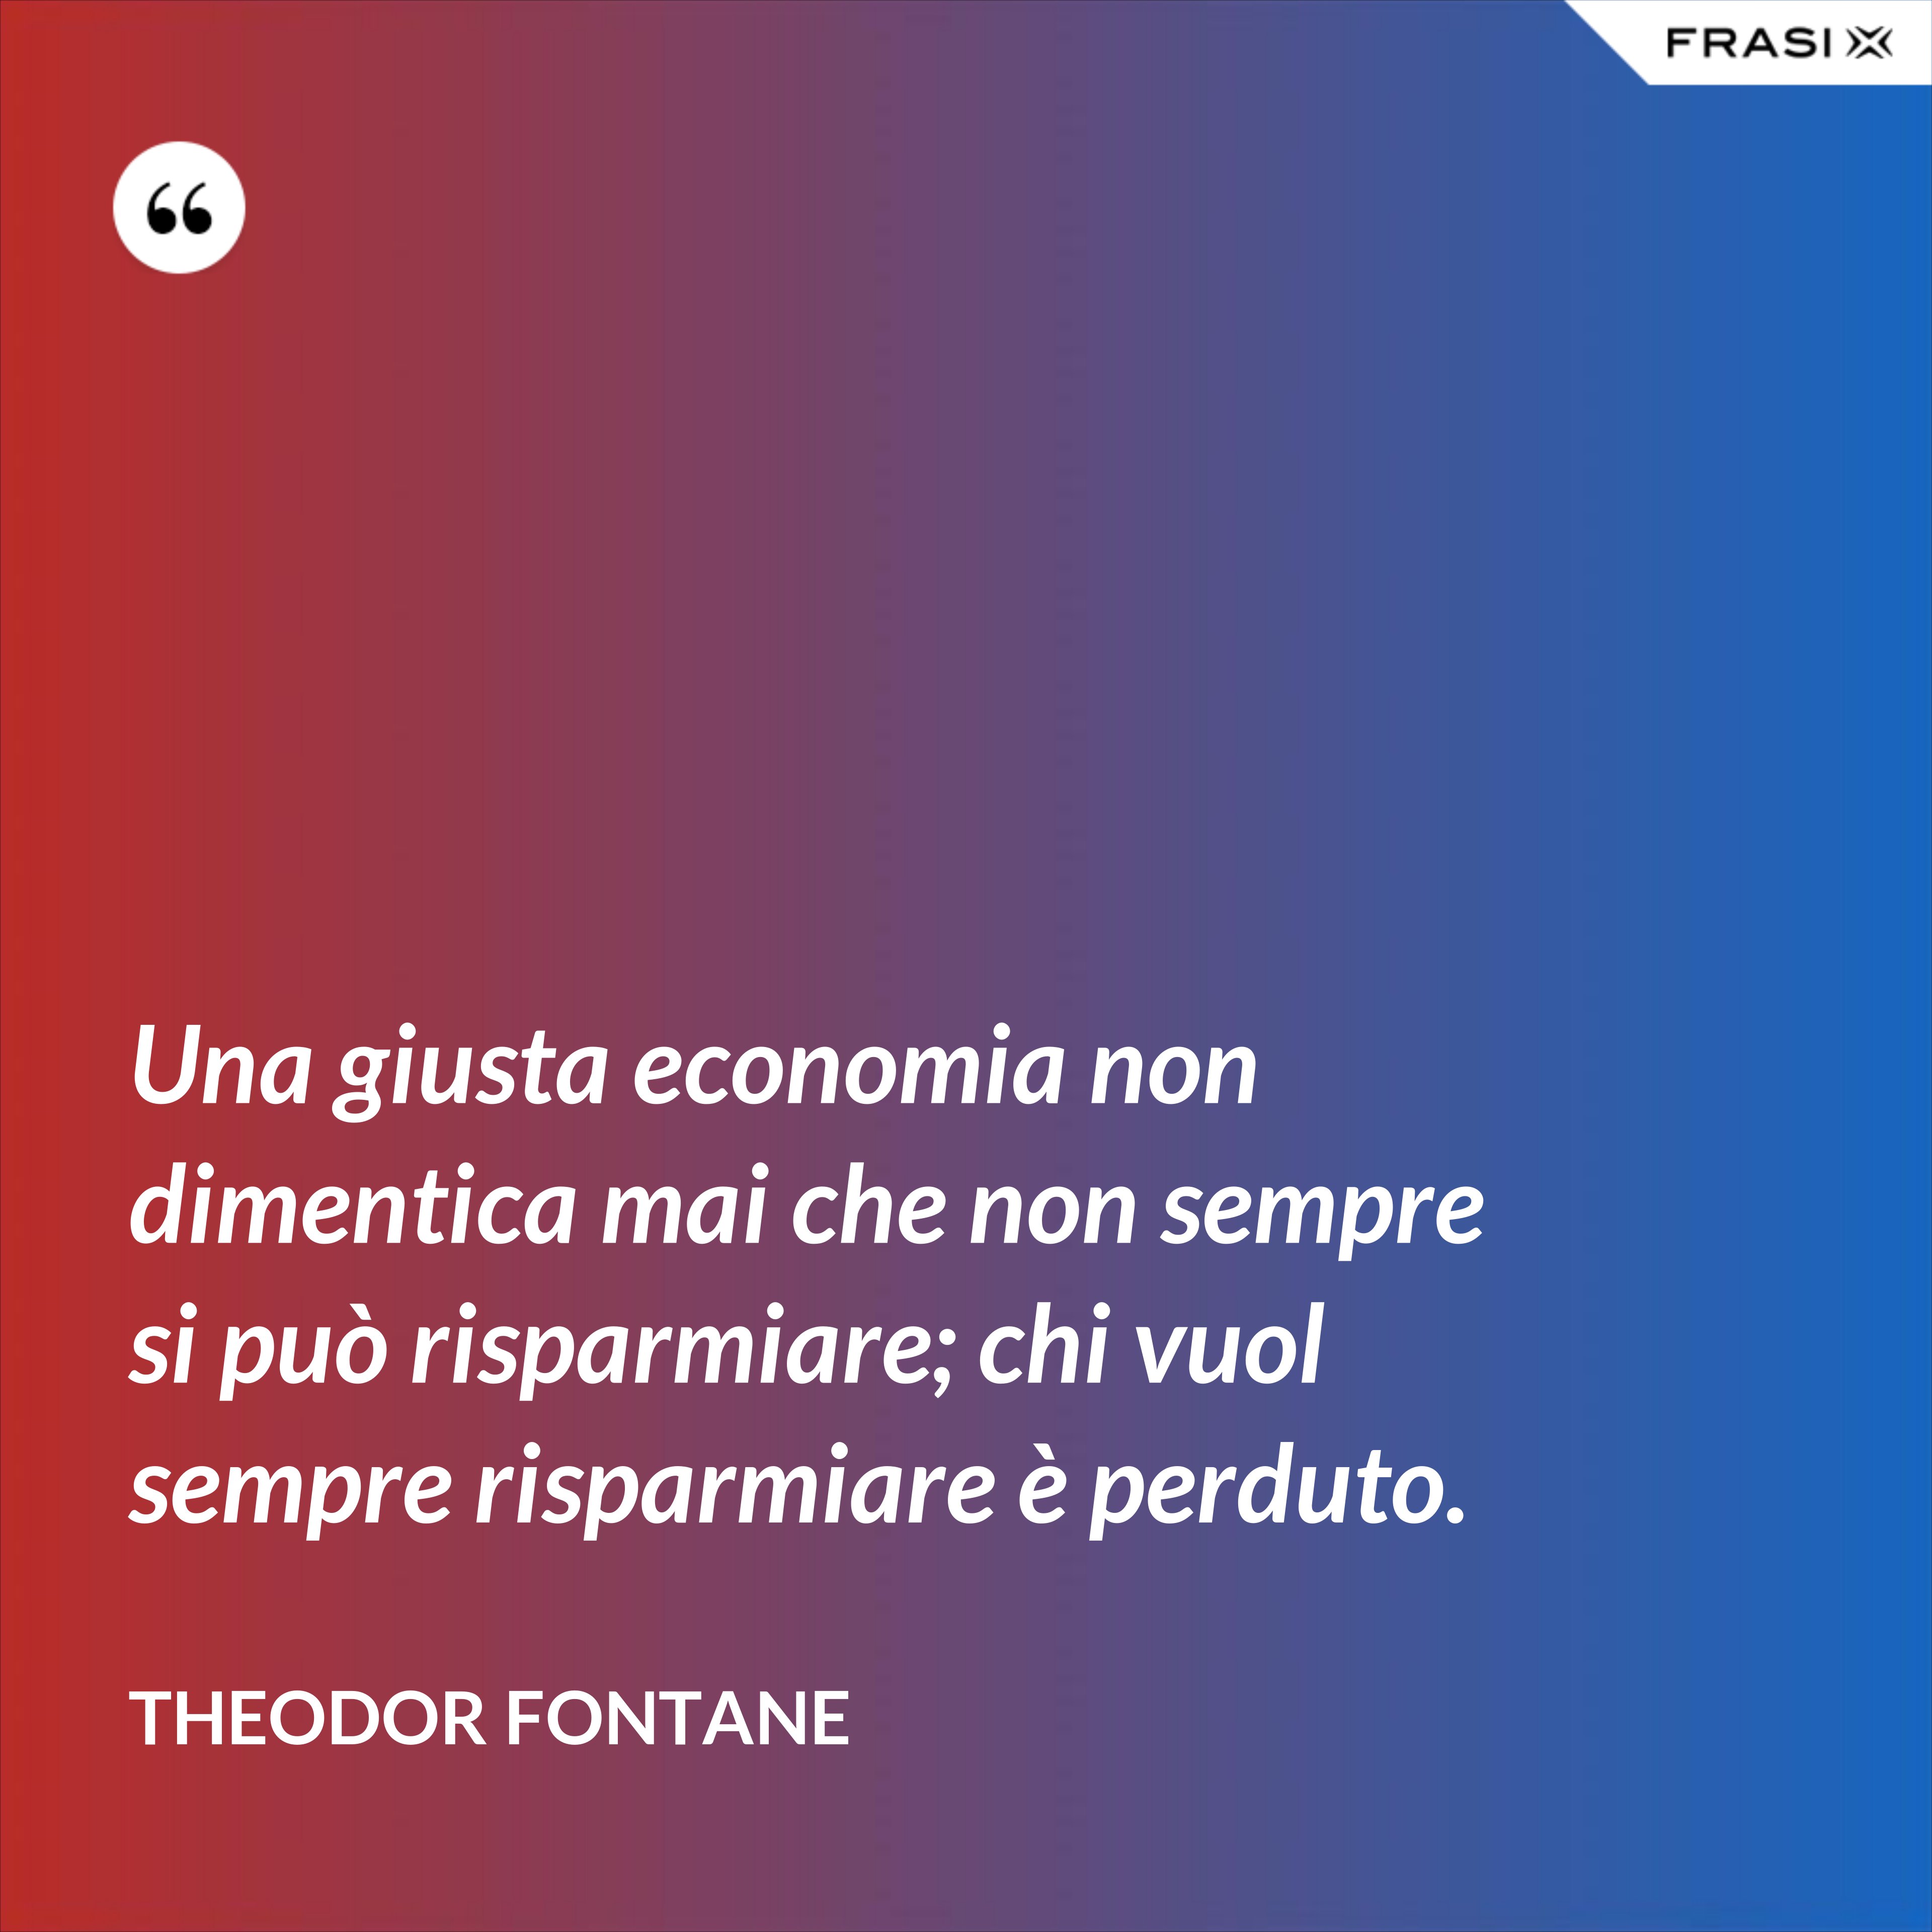 Una giusta economia non dimentica mai che non sempre si può risparmiare; chi vuol sempre risparmiare è perduto. - Theodor Fontane